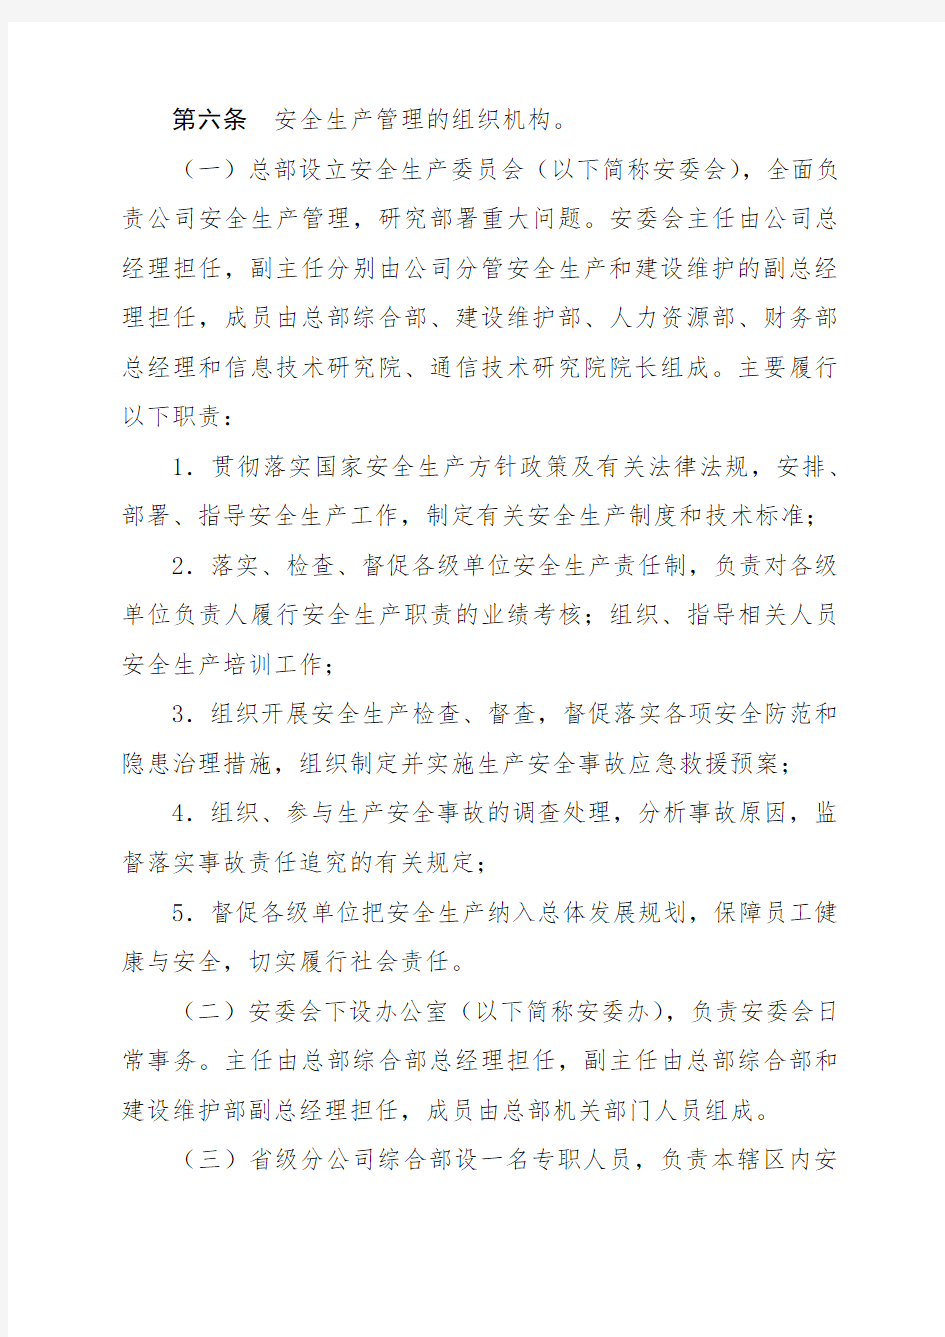 中国铁塔股份有限公司安全生产管理规定(试行)